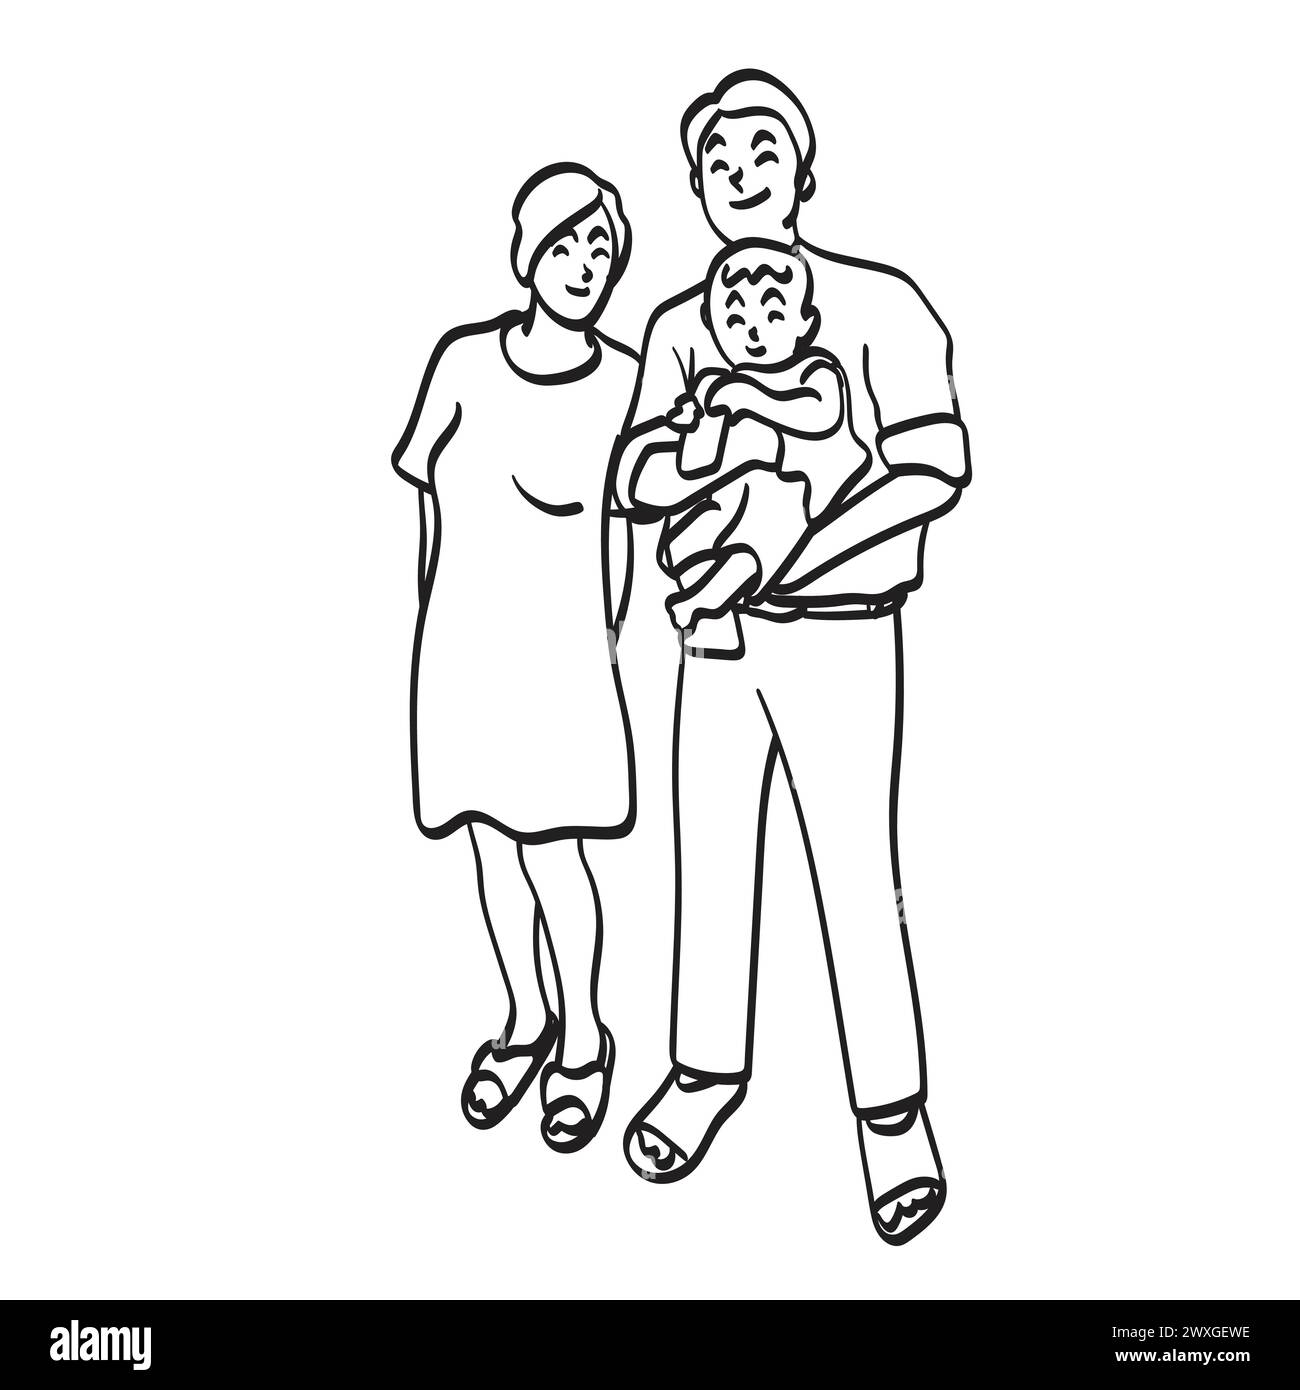 Eltern mit neugeborenem Baby Illustration Vektor Hand gezeichnet isoliert auf weißem Hintergrund Stock Vektor